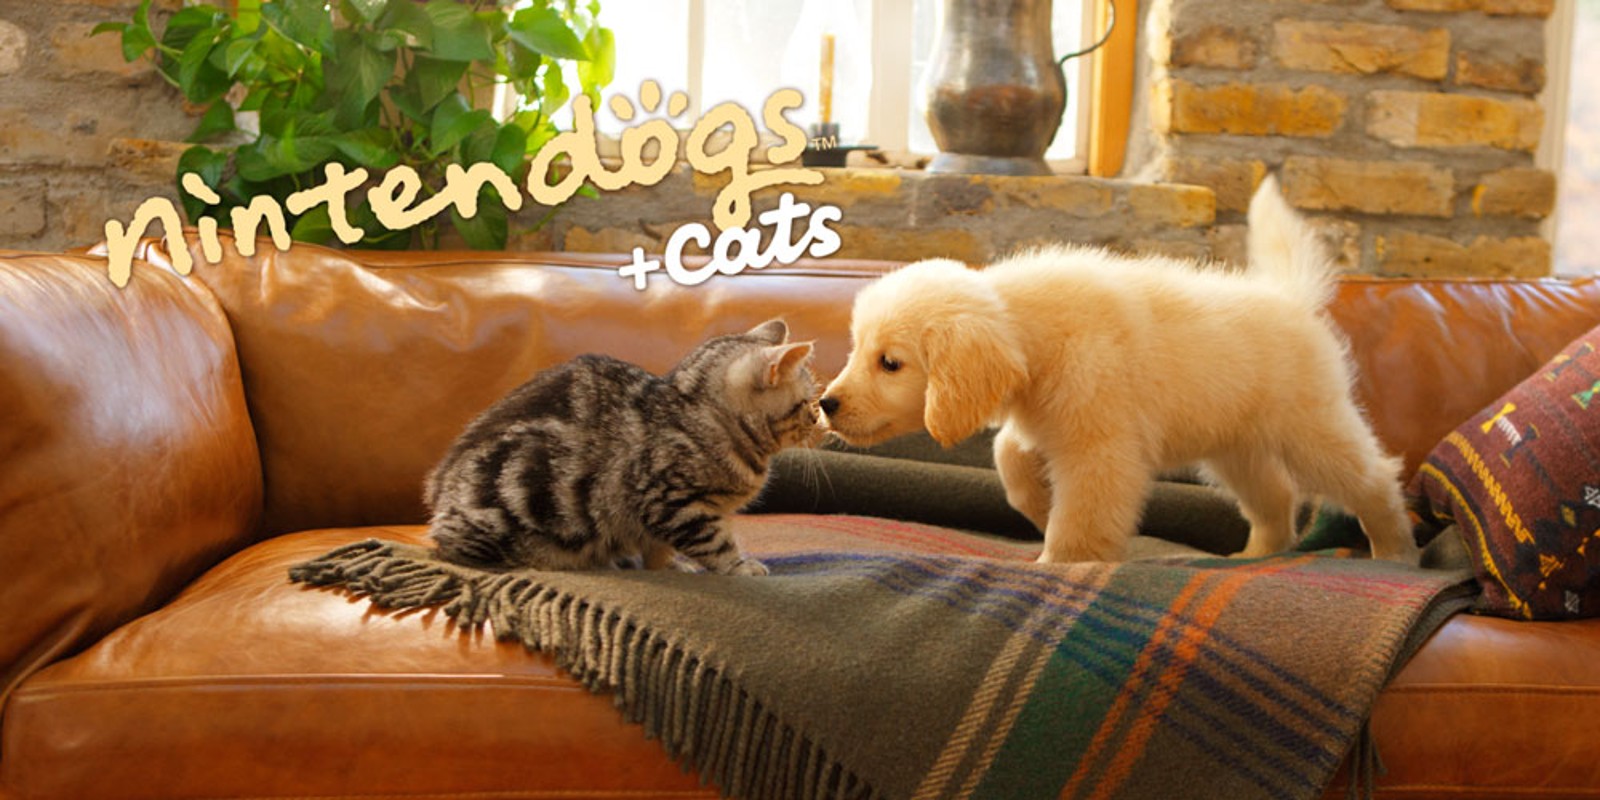 nintendogs + cats: Buldogue Francês e Novos Amigos